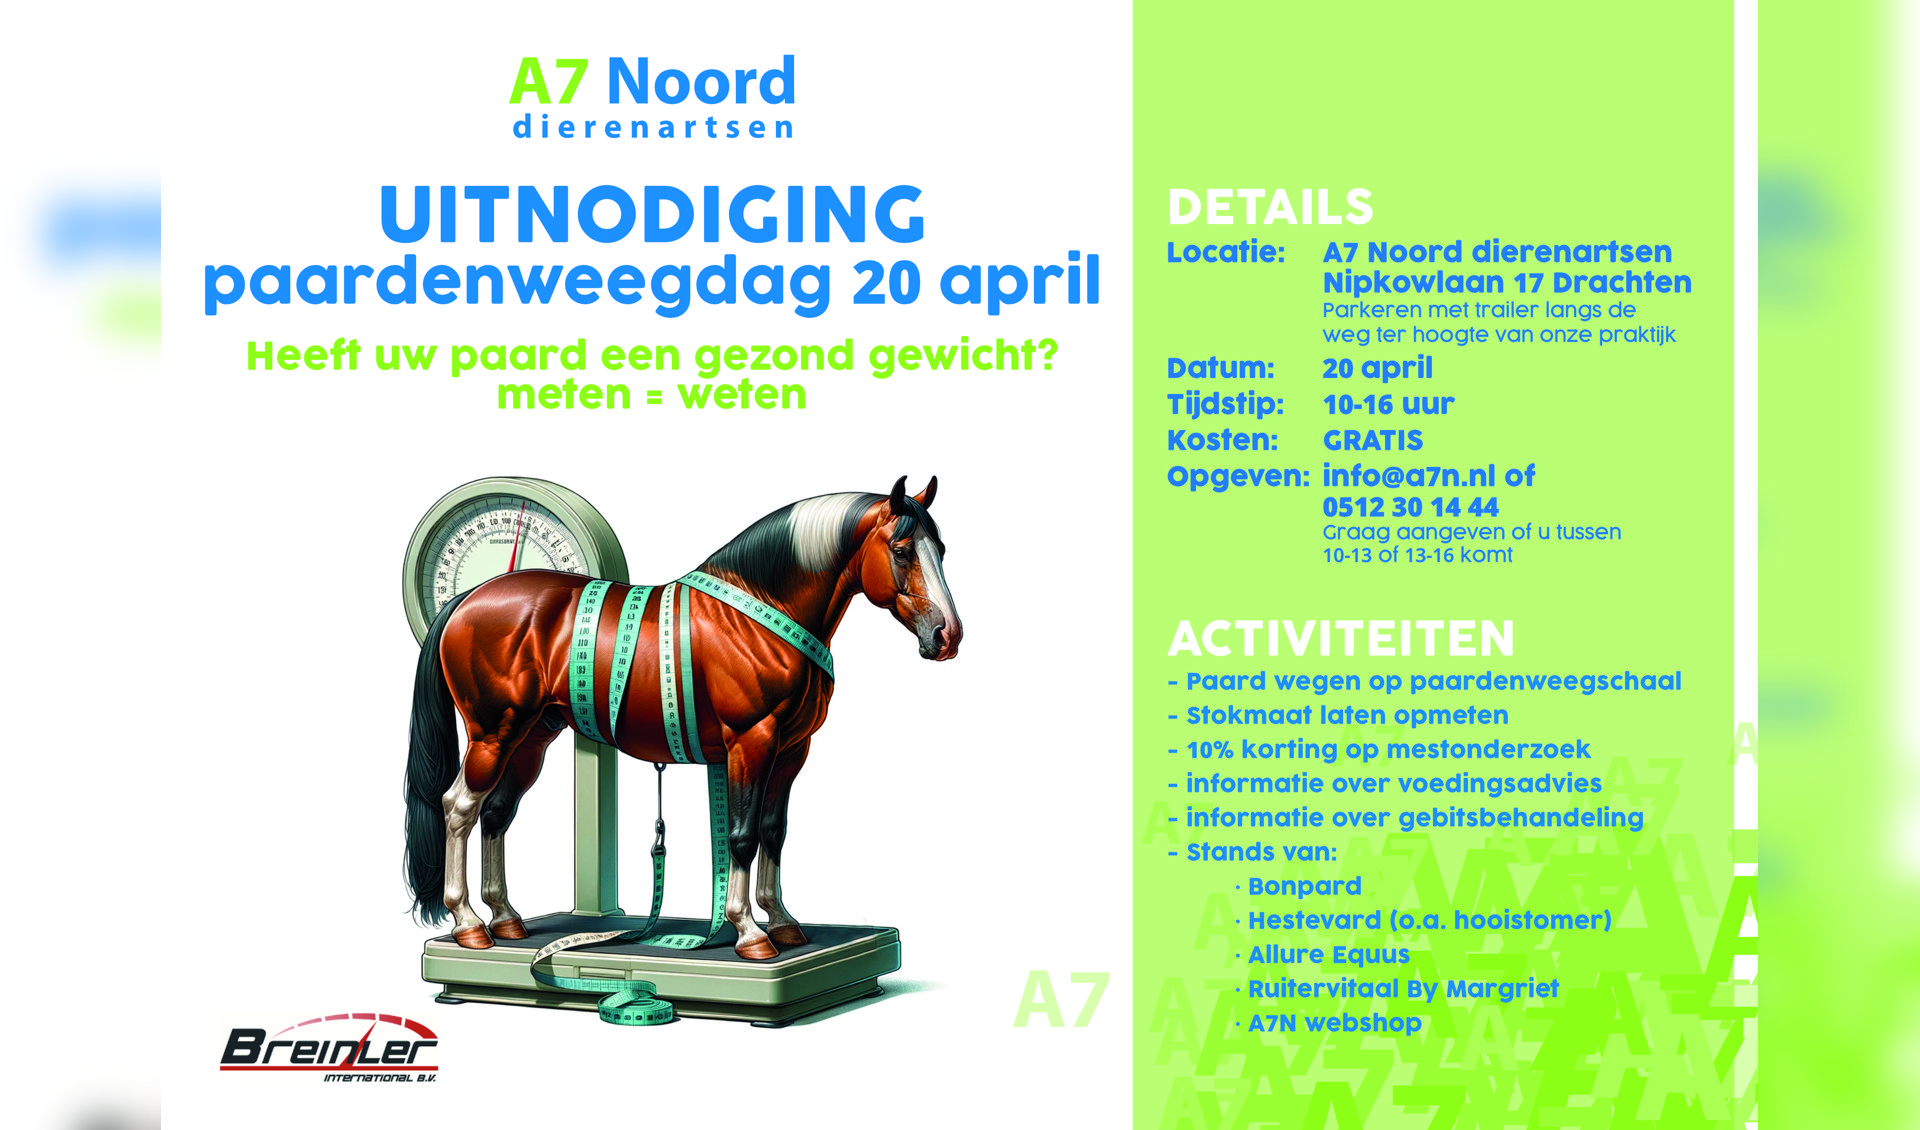 Uitnodiging Paardenweegdag 20 april bij A7 Noord dierenartsen in Drachten